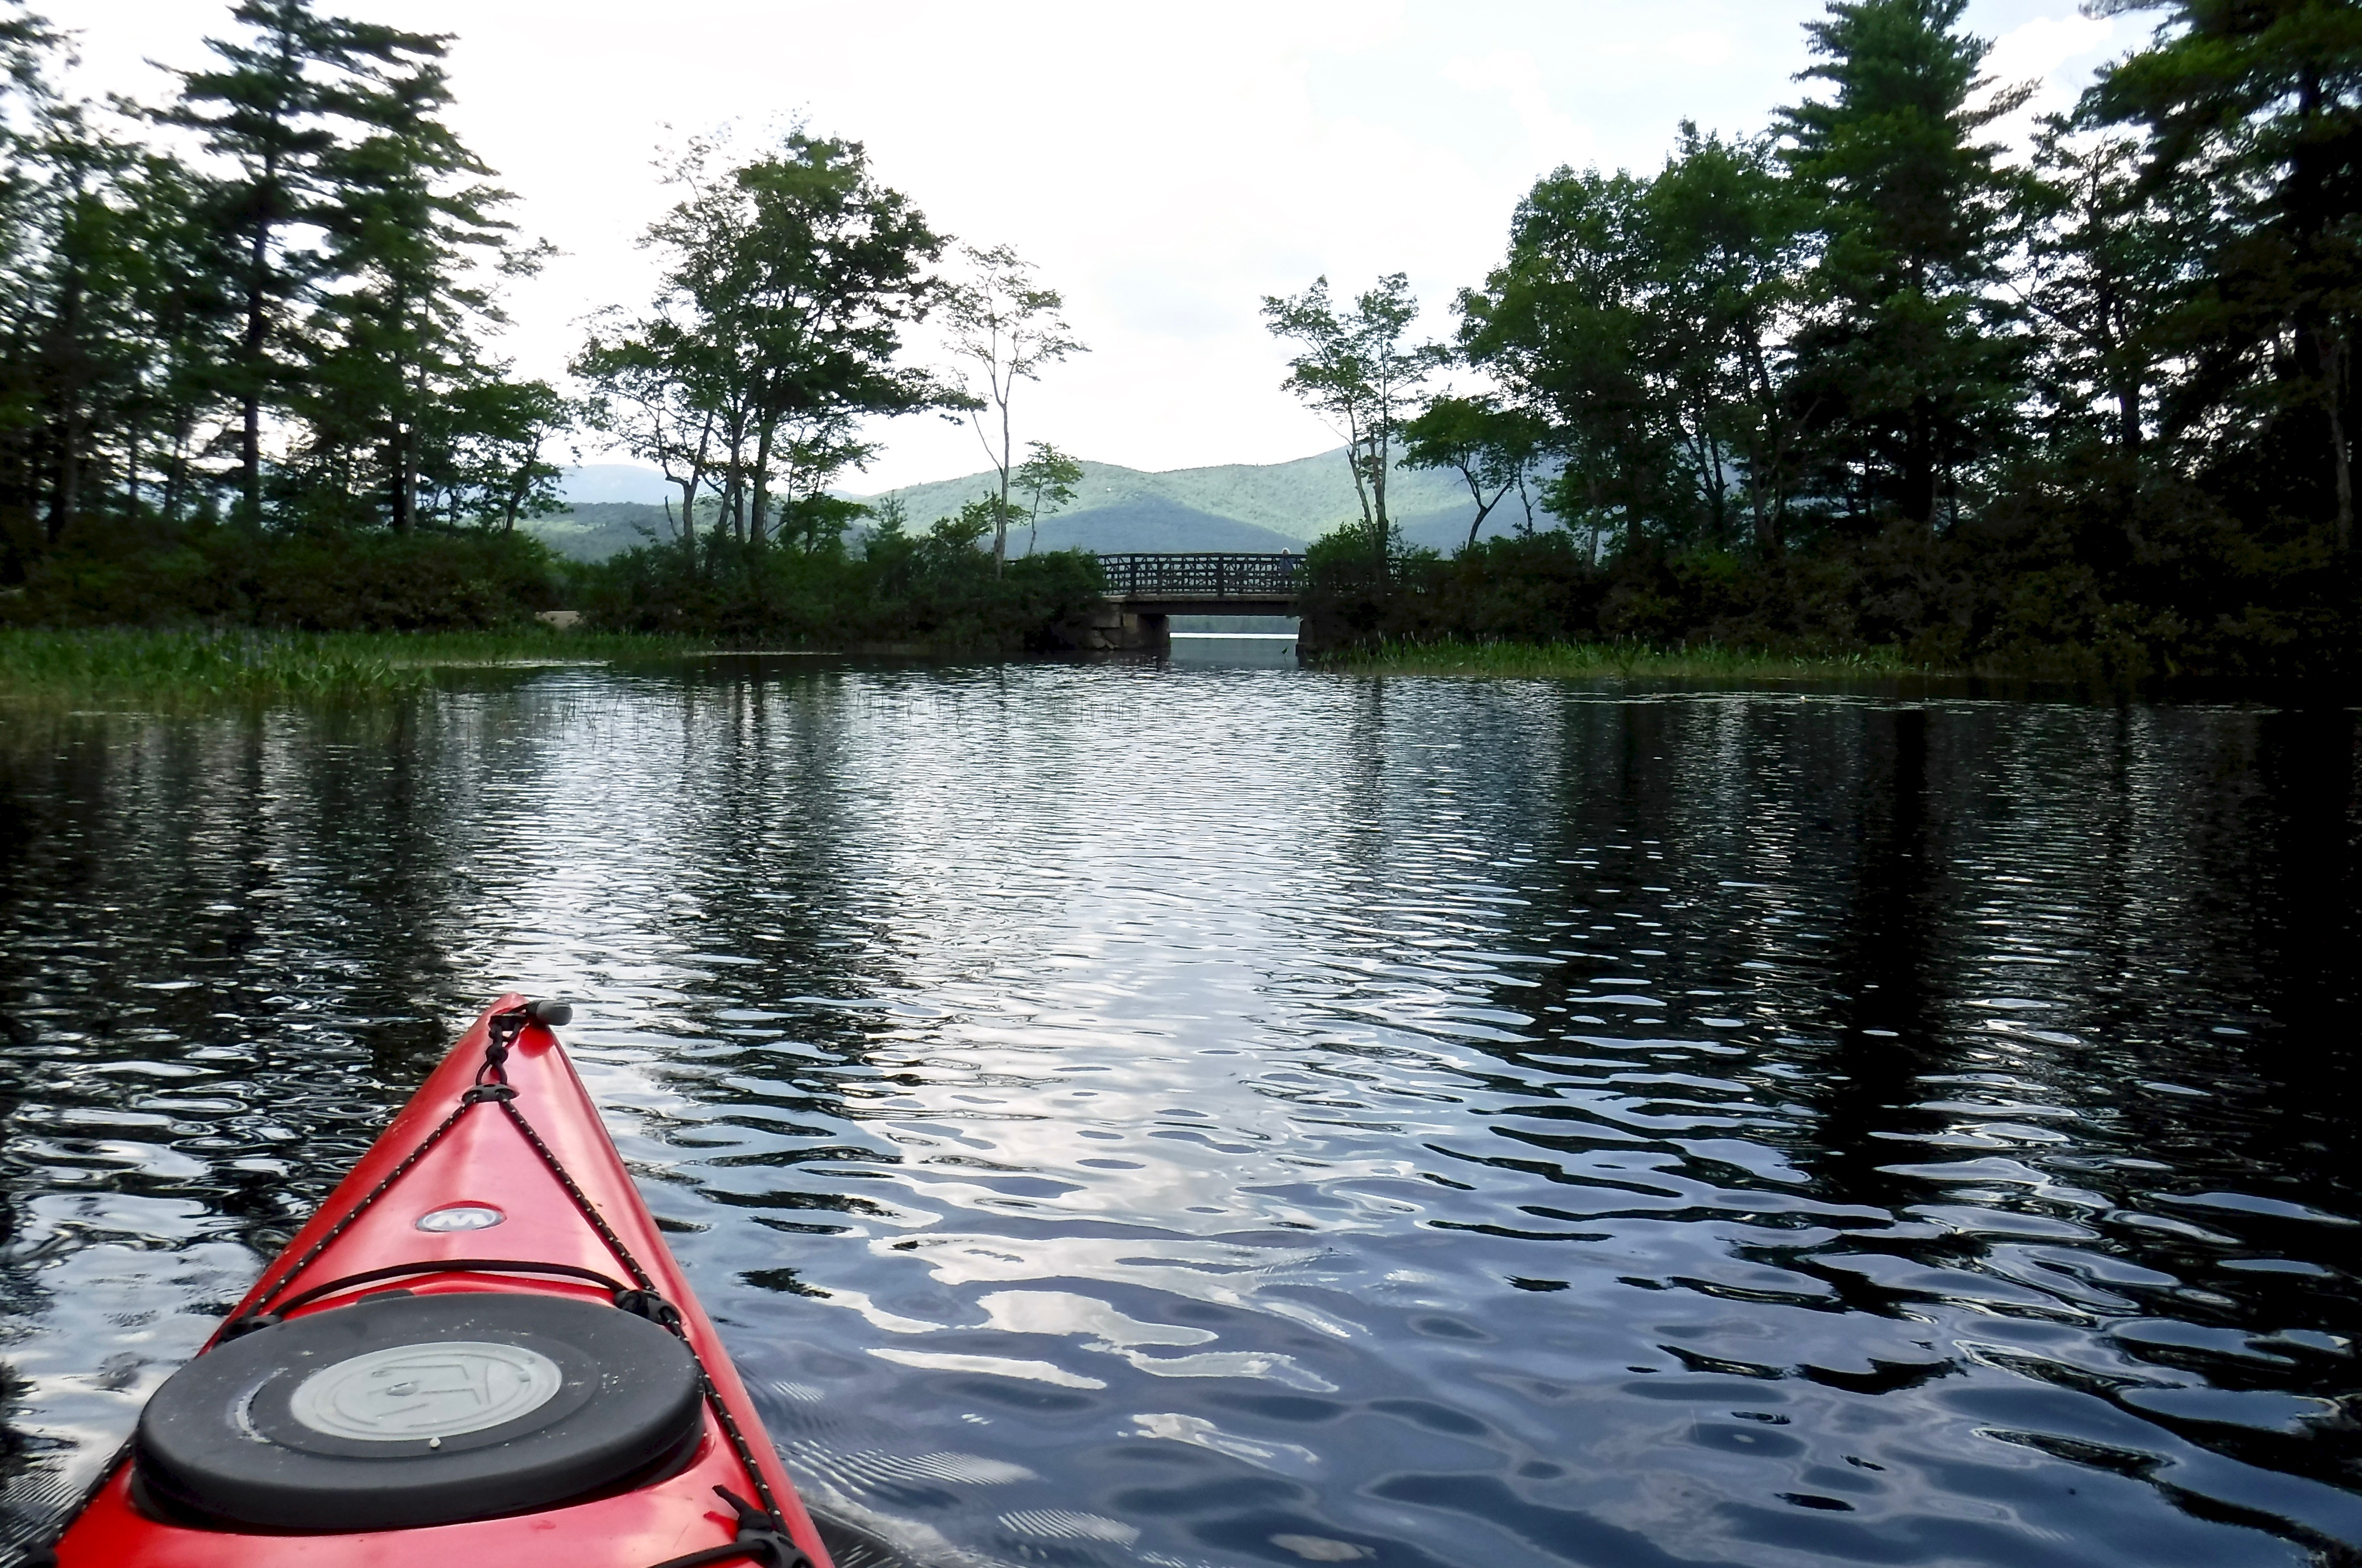 kayaking-little-lake-tamworth-nh